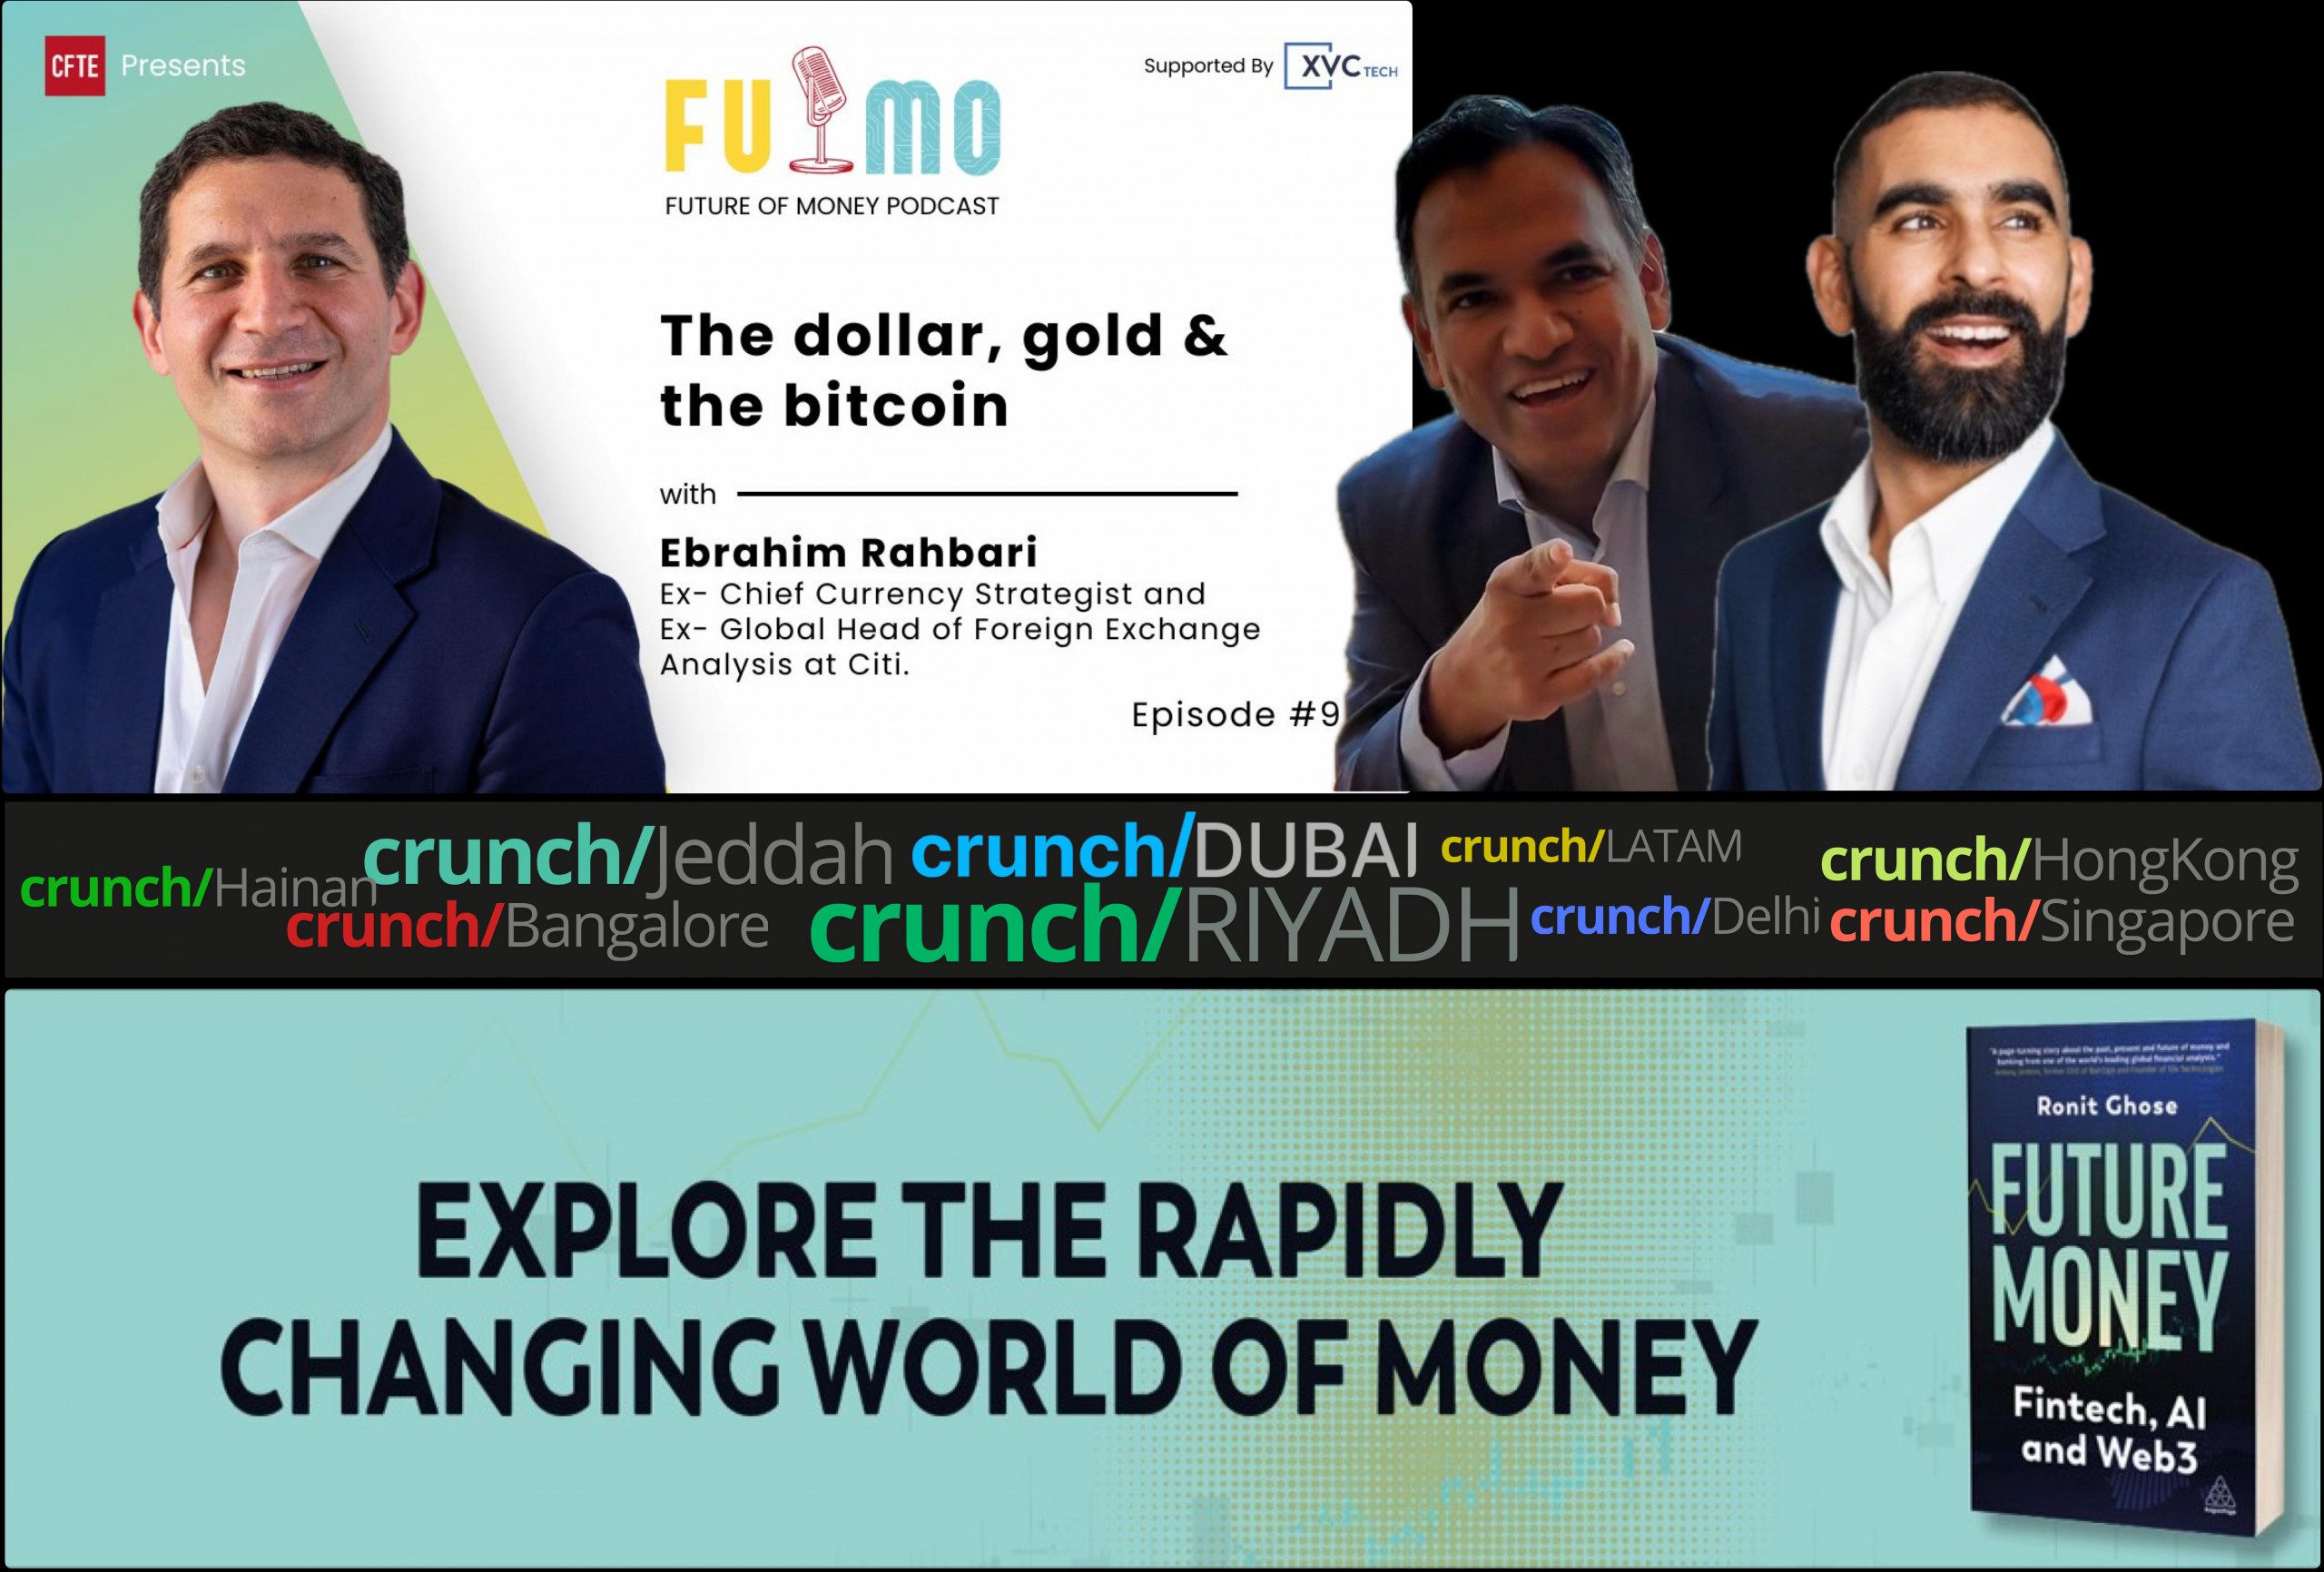 Zukunft des Geldes Podcast moderiert von Ronit Ghose und Gaurav Dhar Gast Ebrahim Rahbari - Das Dollargold und der Bitcoin v2